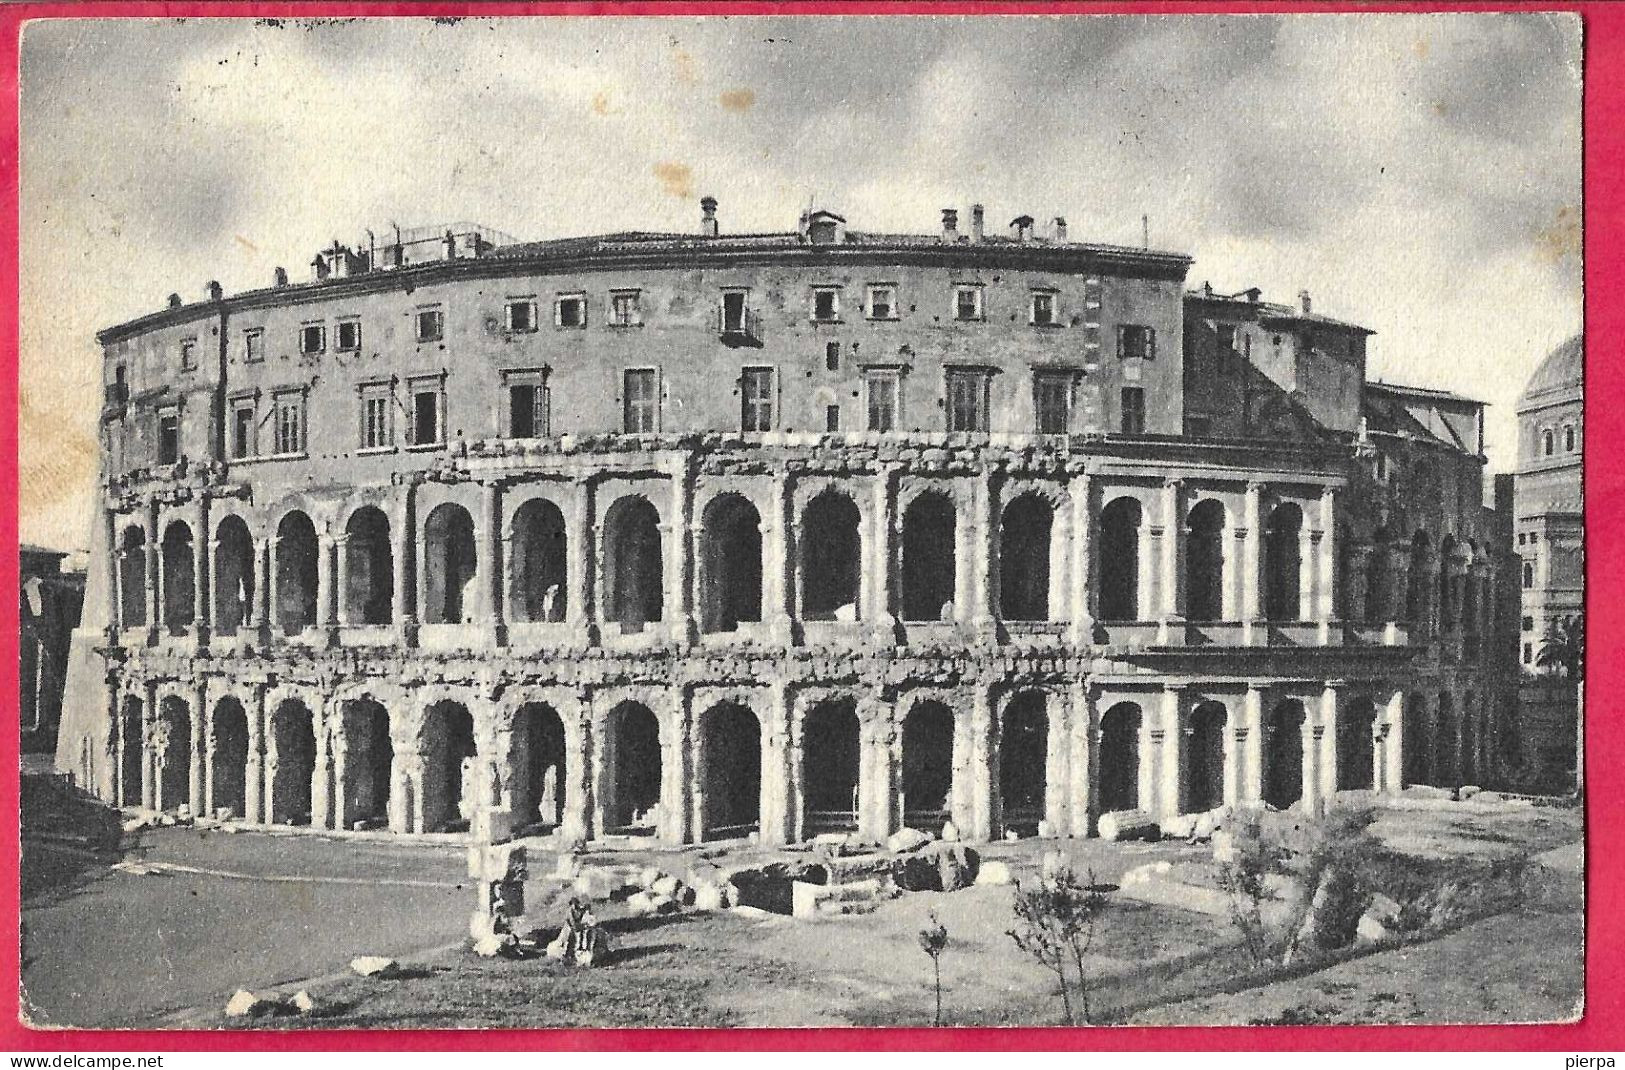 ROMA - TEATRO MARCELLO - FORMATO PICCOLO - EDIZIONE MARCUCCI - VIAGGIATA 1949 - Andere Monumente & Gebäude